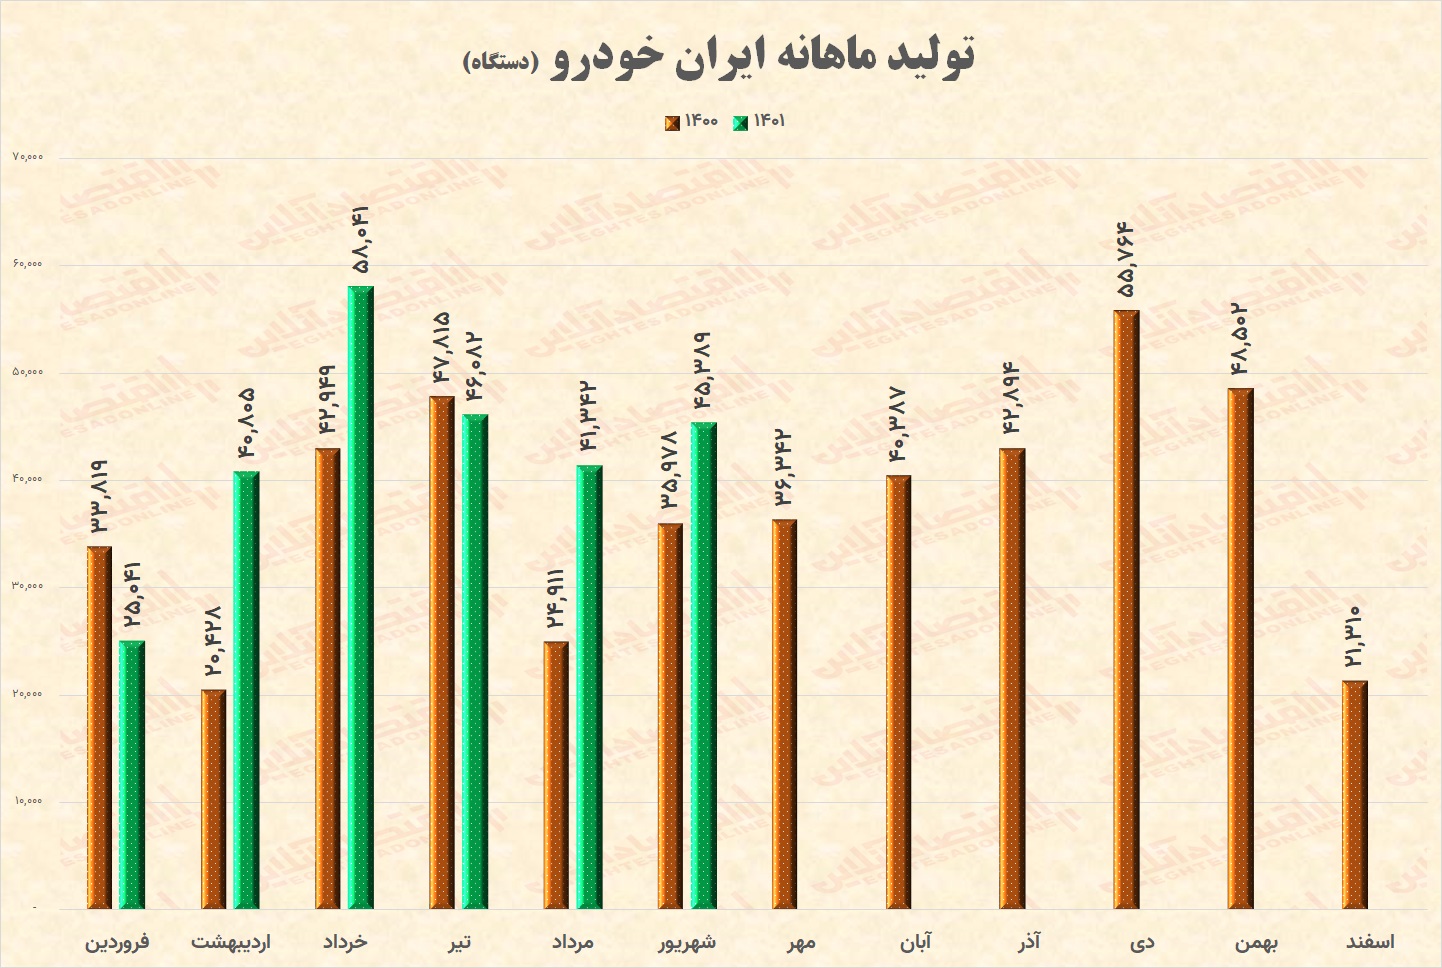 ایران خودرو در نیمه نخست امسال چقدر تولید کرد؟ / پژو و سمند محصولات اصلی ایران خودرو